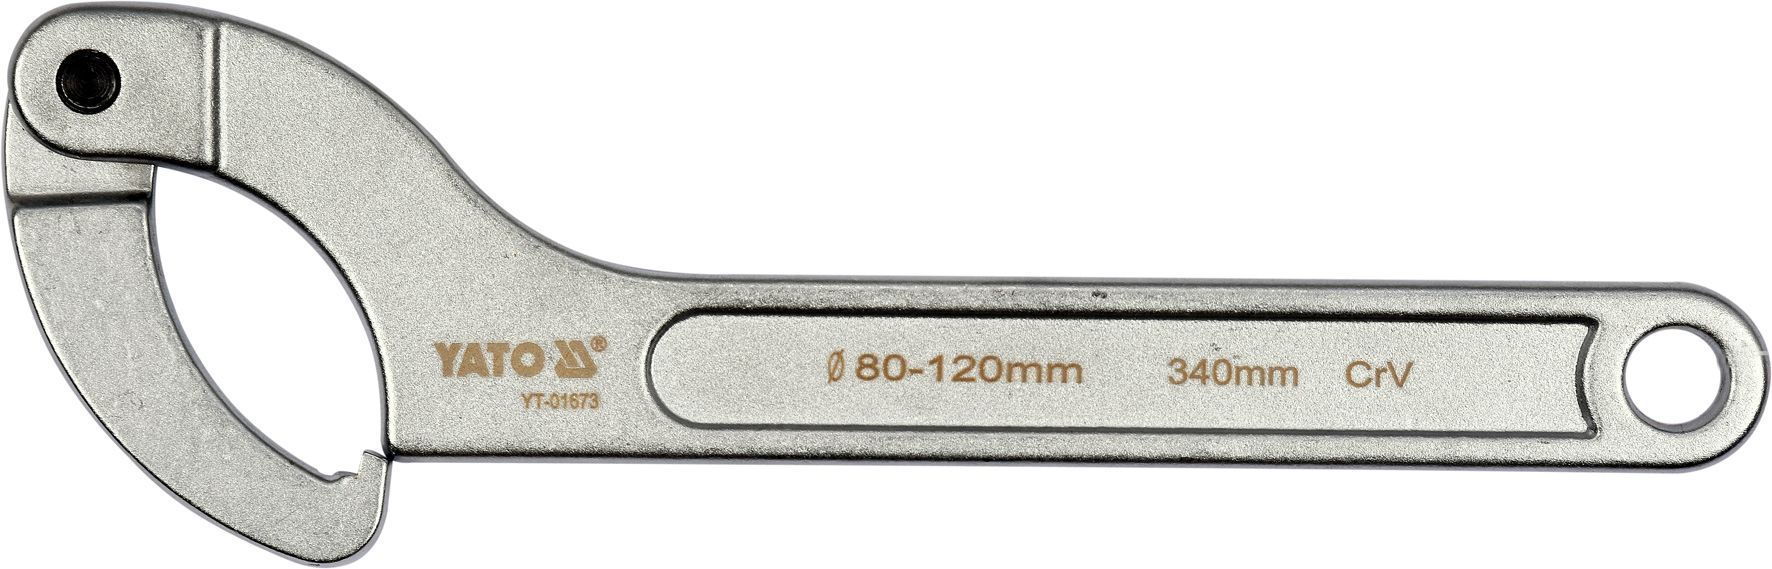 Ключ разводной сегментный шарнирный  80-120mm  YATO YT-01673